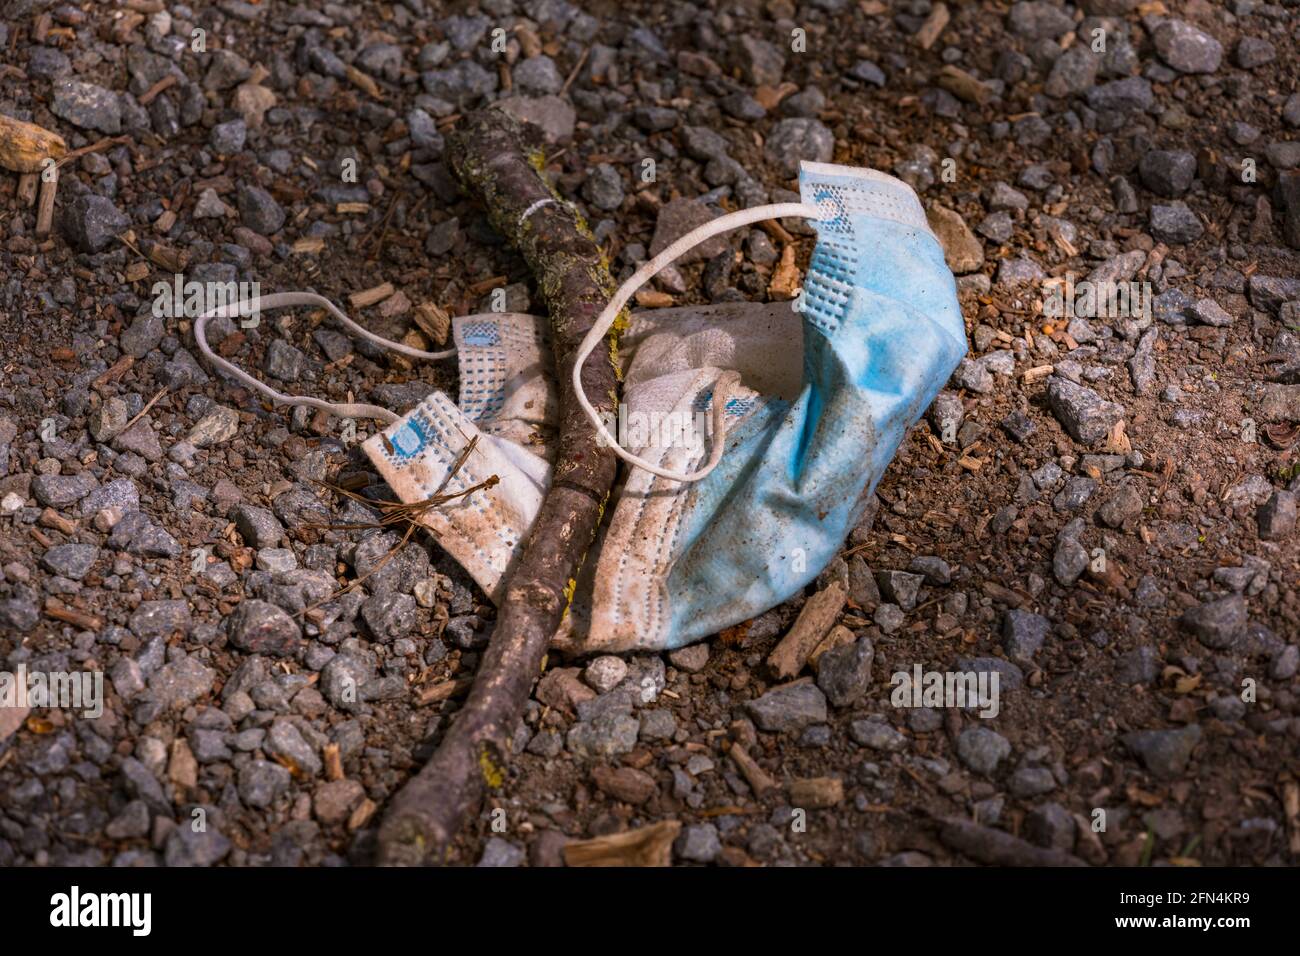 Un masque médical est jeté dans un pré et pollue l'environnement Banque D'Images